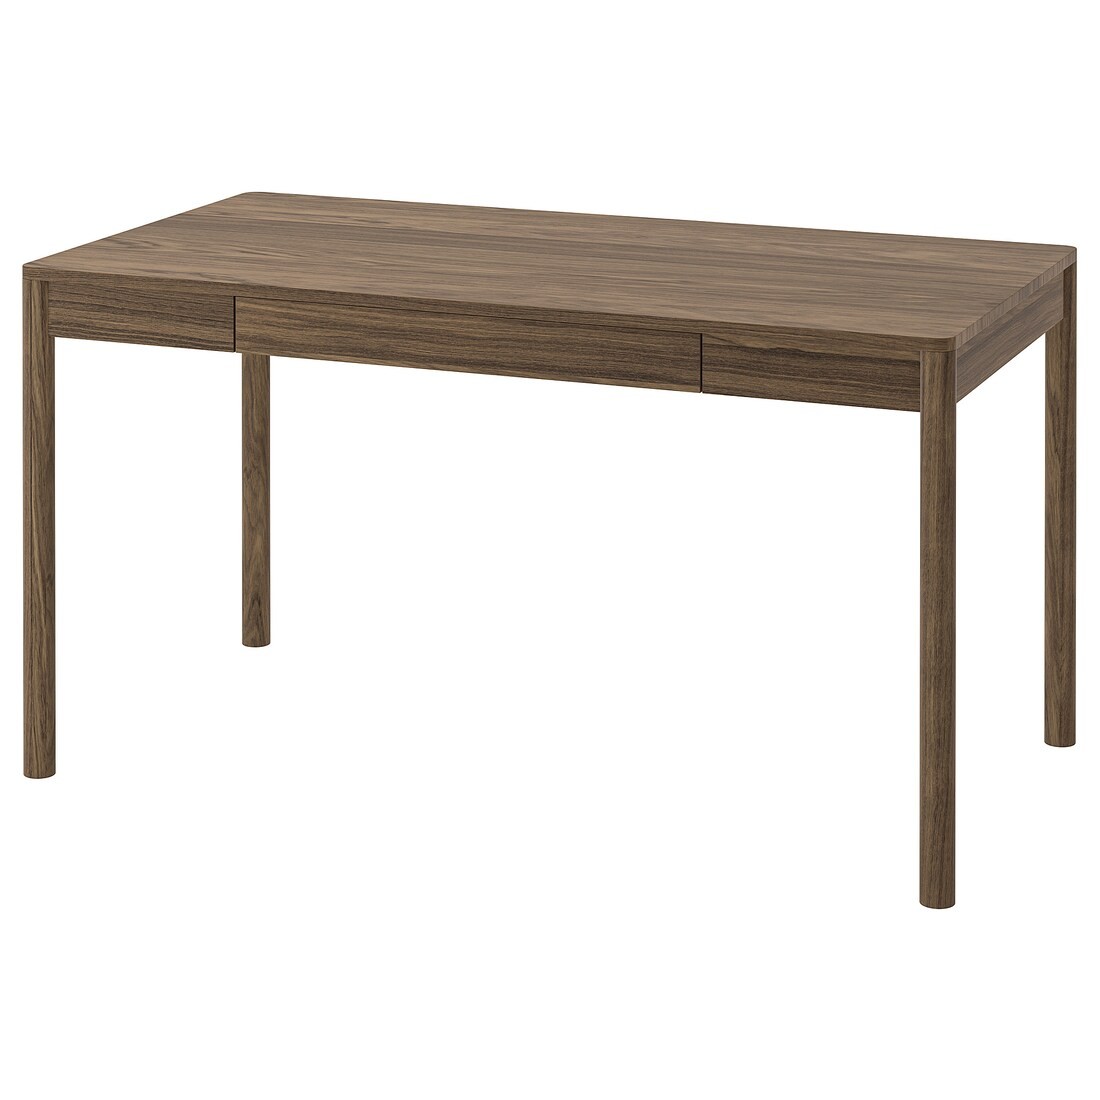 TONSTAD Письменный стол, коричневый дубовый шпон, 140x75 см